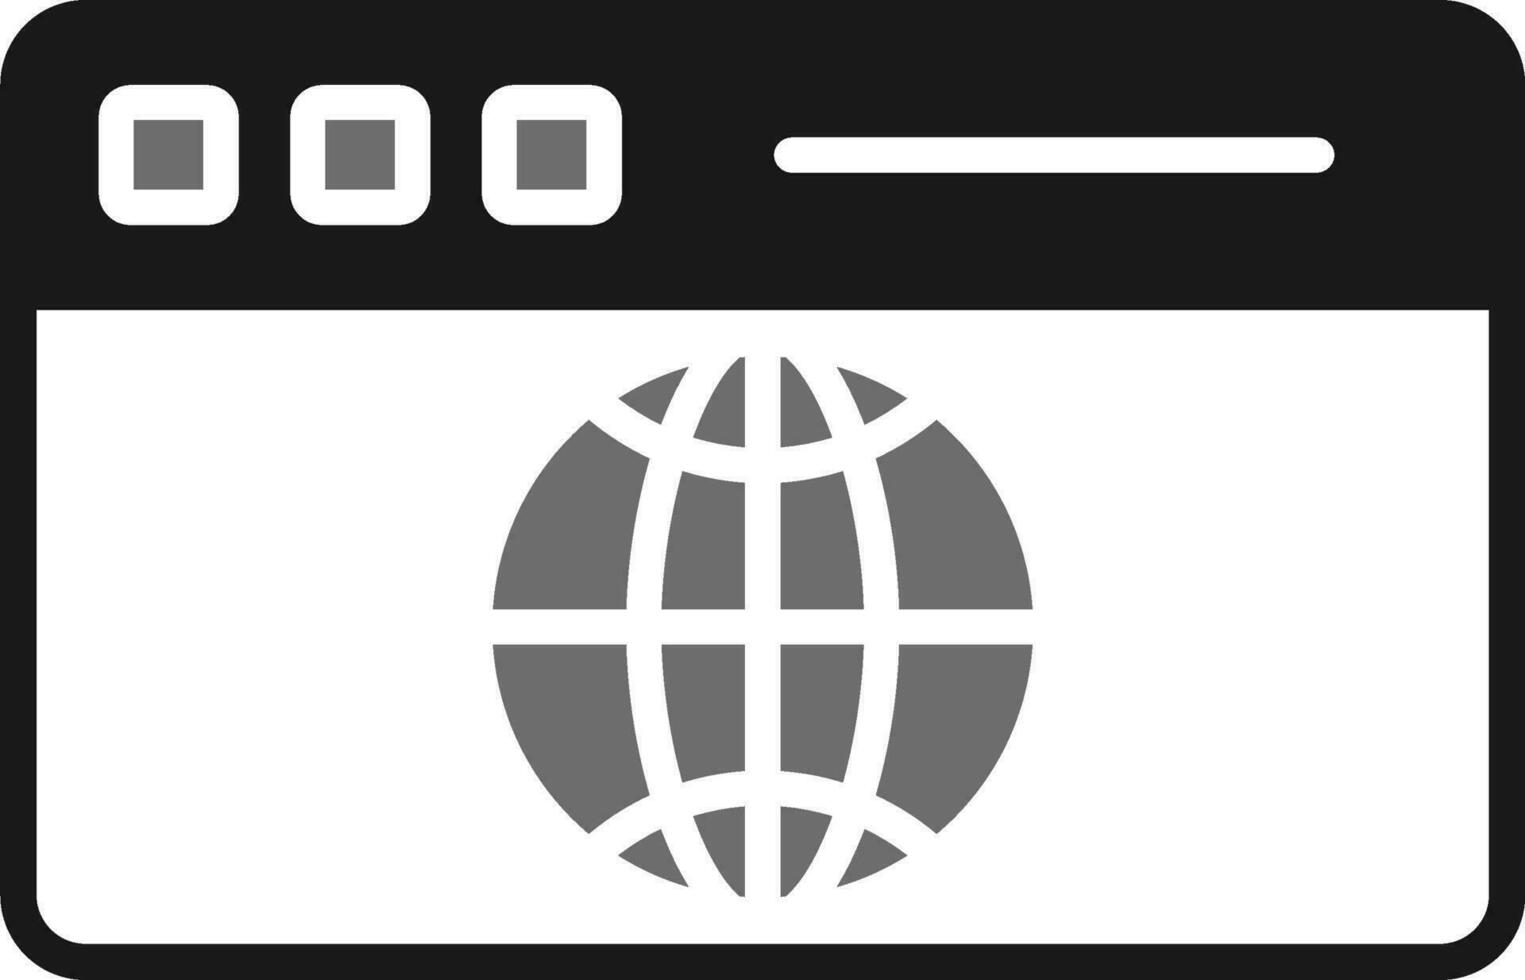 icono de vector de sitio web